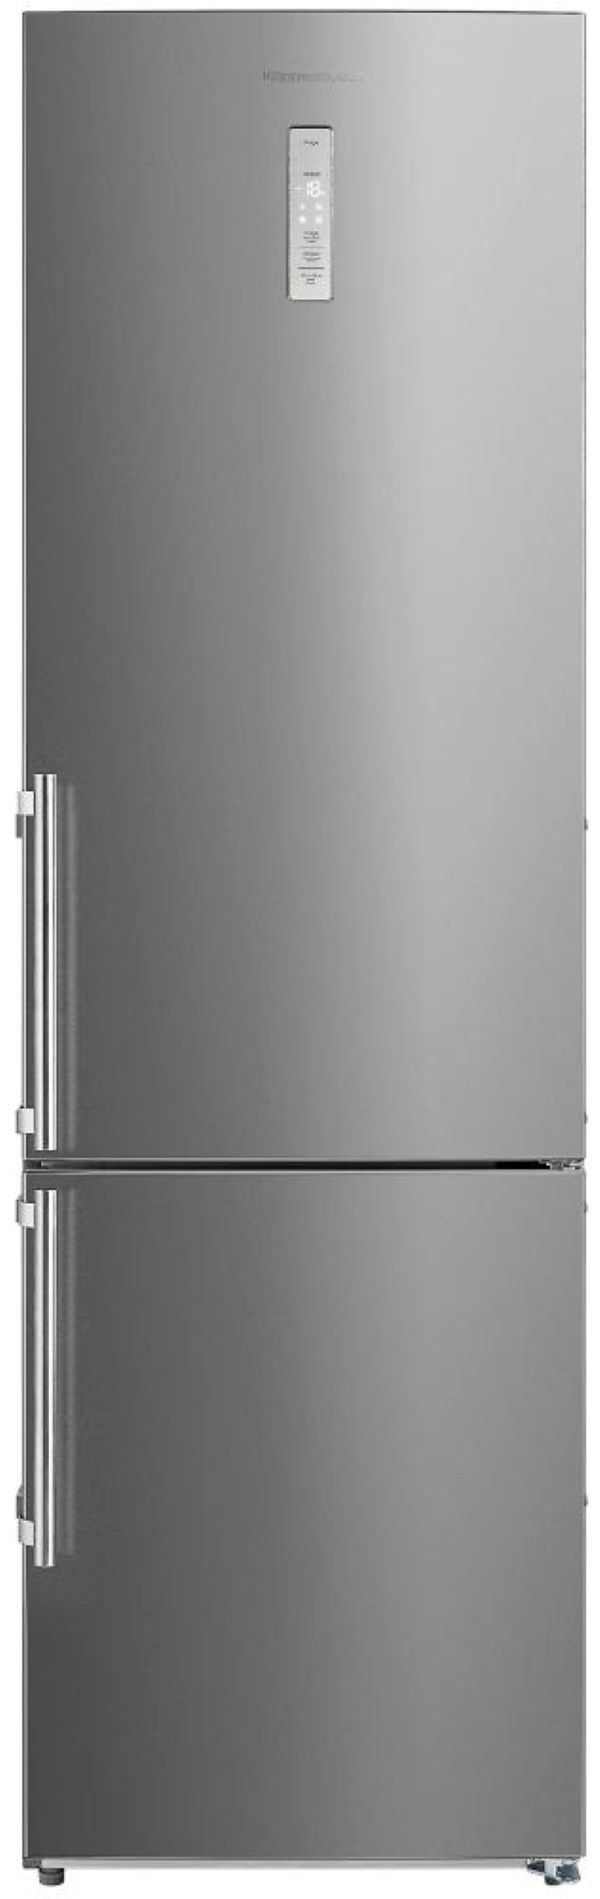 Холодильник NoBrand FKG 6600.0 E-02 серебристый